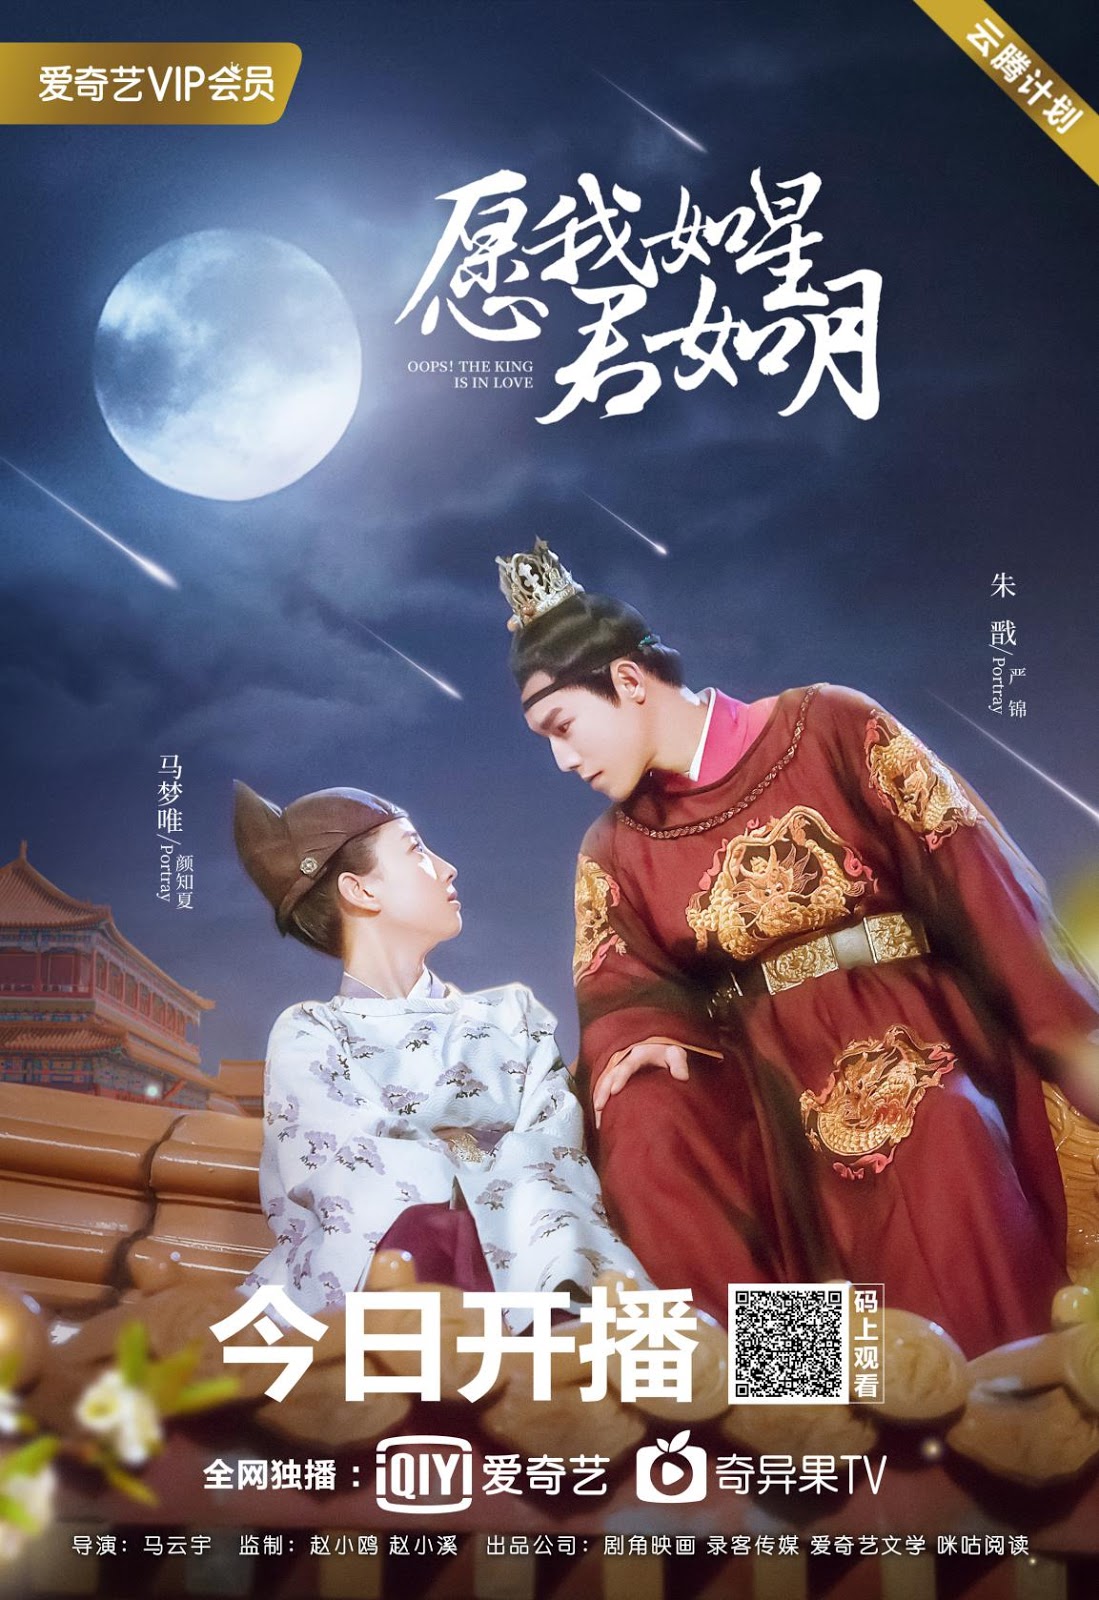 Poster Phim Nguyện Ta Như Sao Chàng Như Trăng (Oops! The King is in Love)